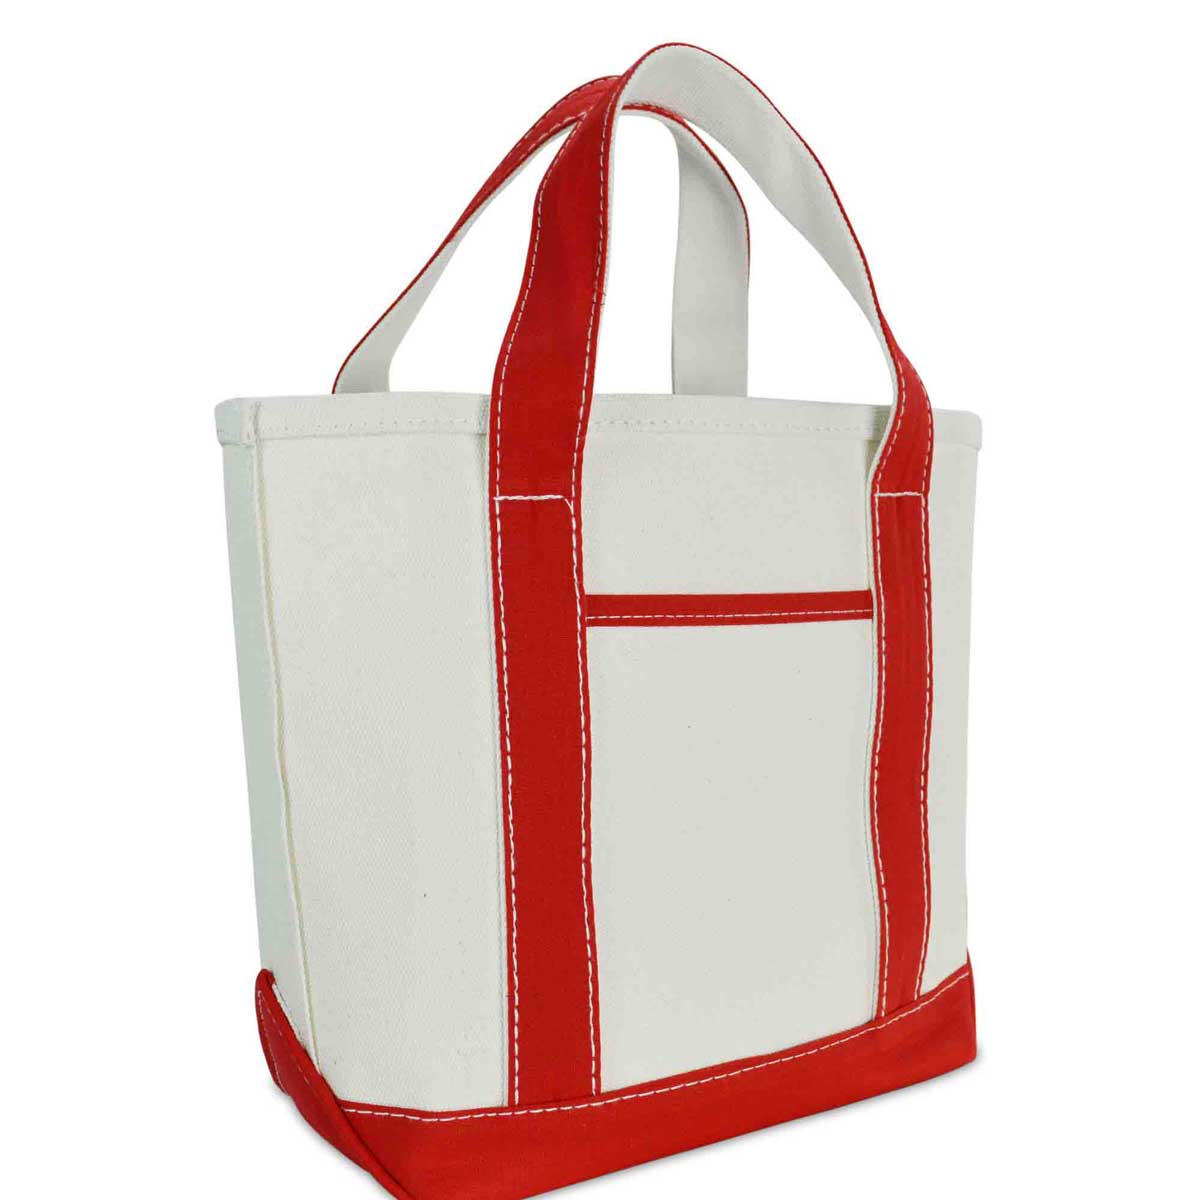 Dalix 14" Small Premium Tote Bag